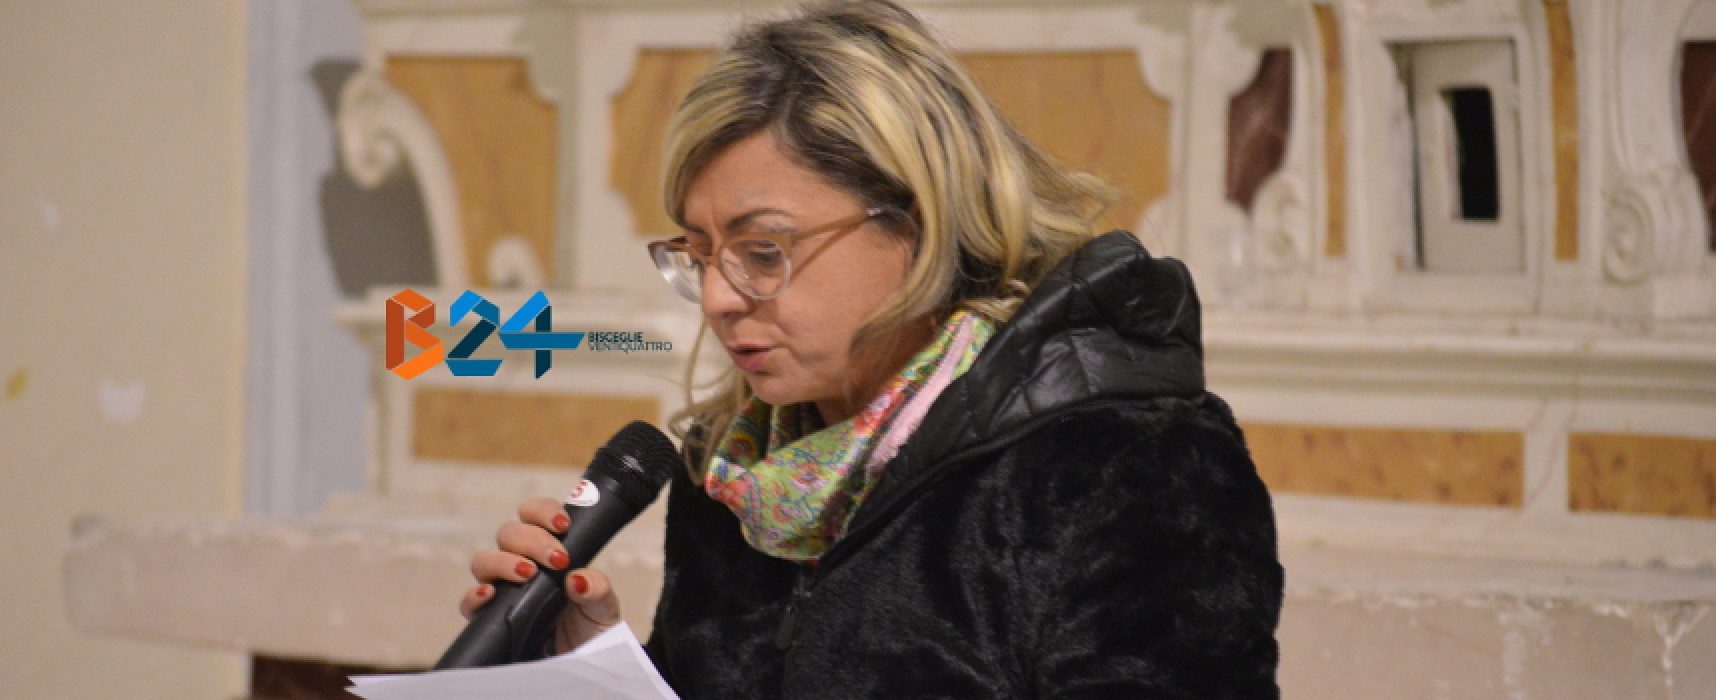 Giorgia Preziosa scrive a sindaco e assessore Parisi: “Programmare apertura del cimitero”